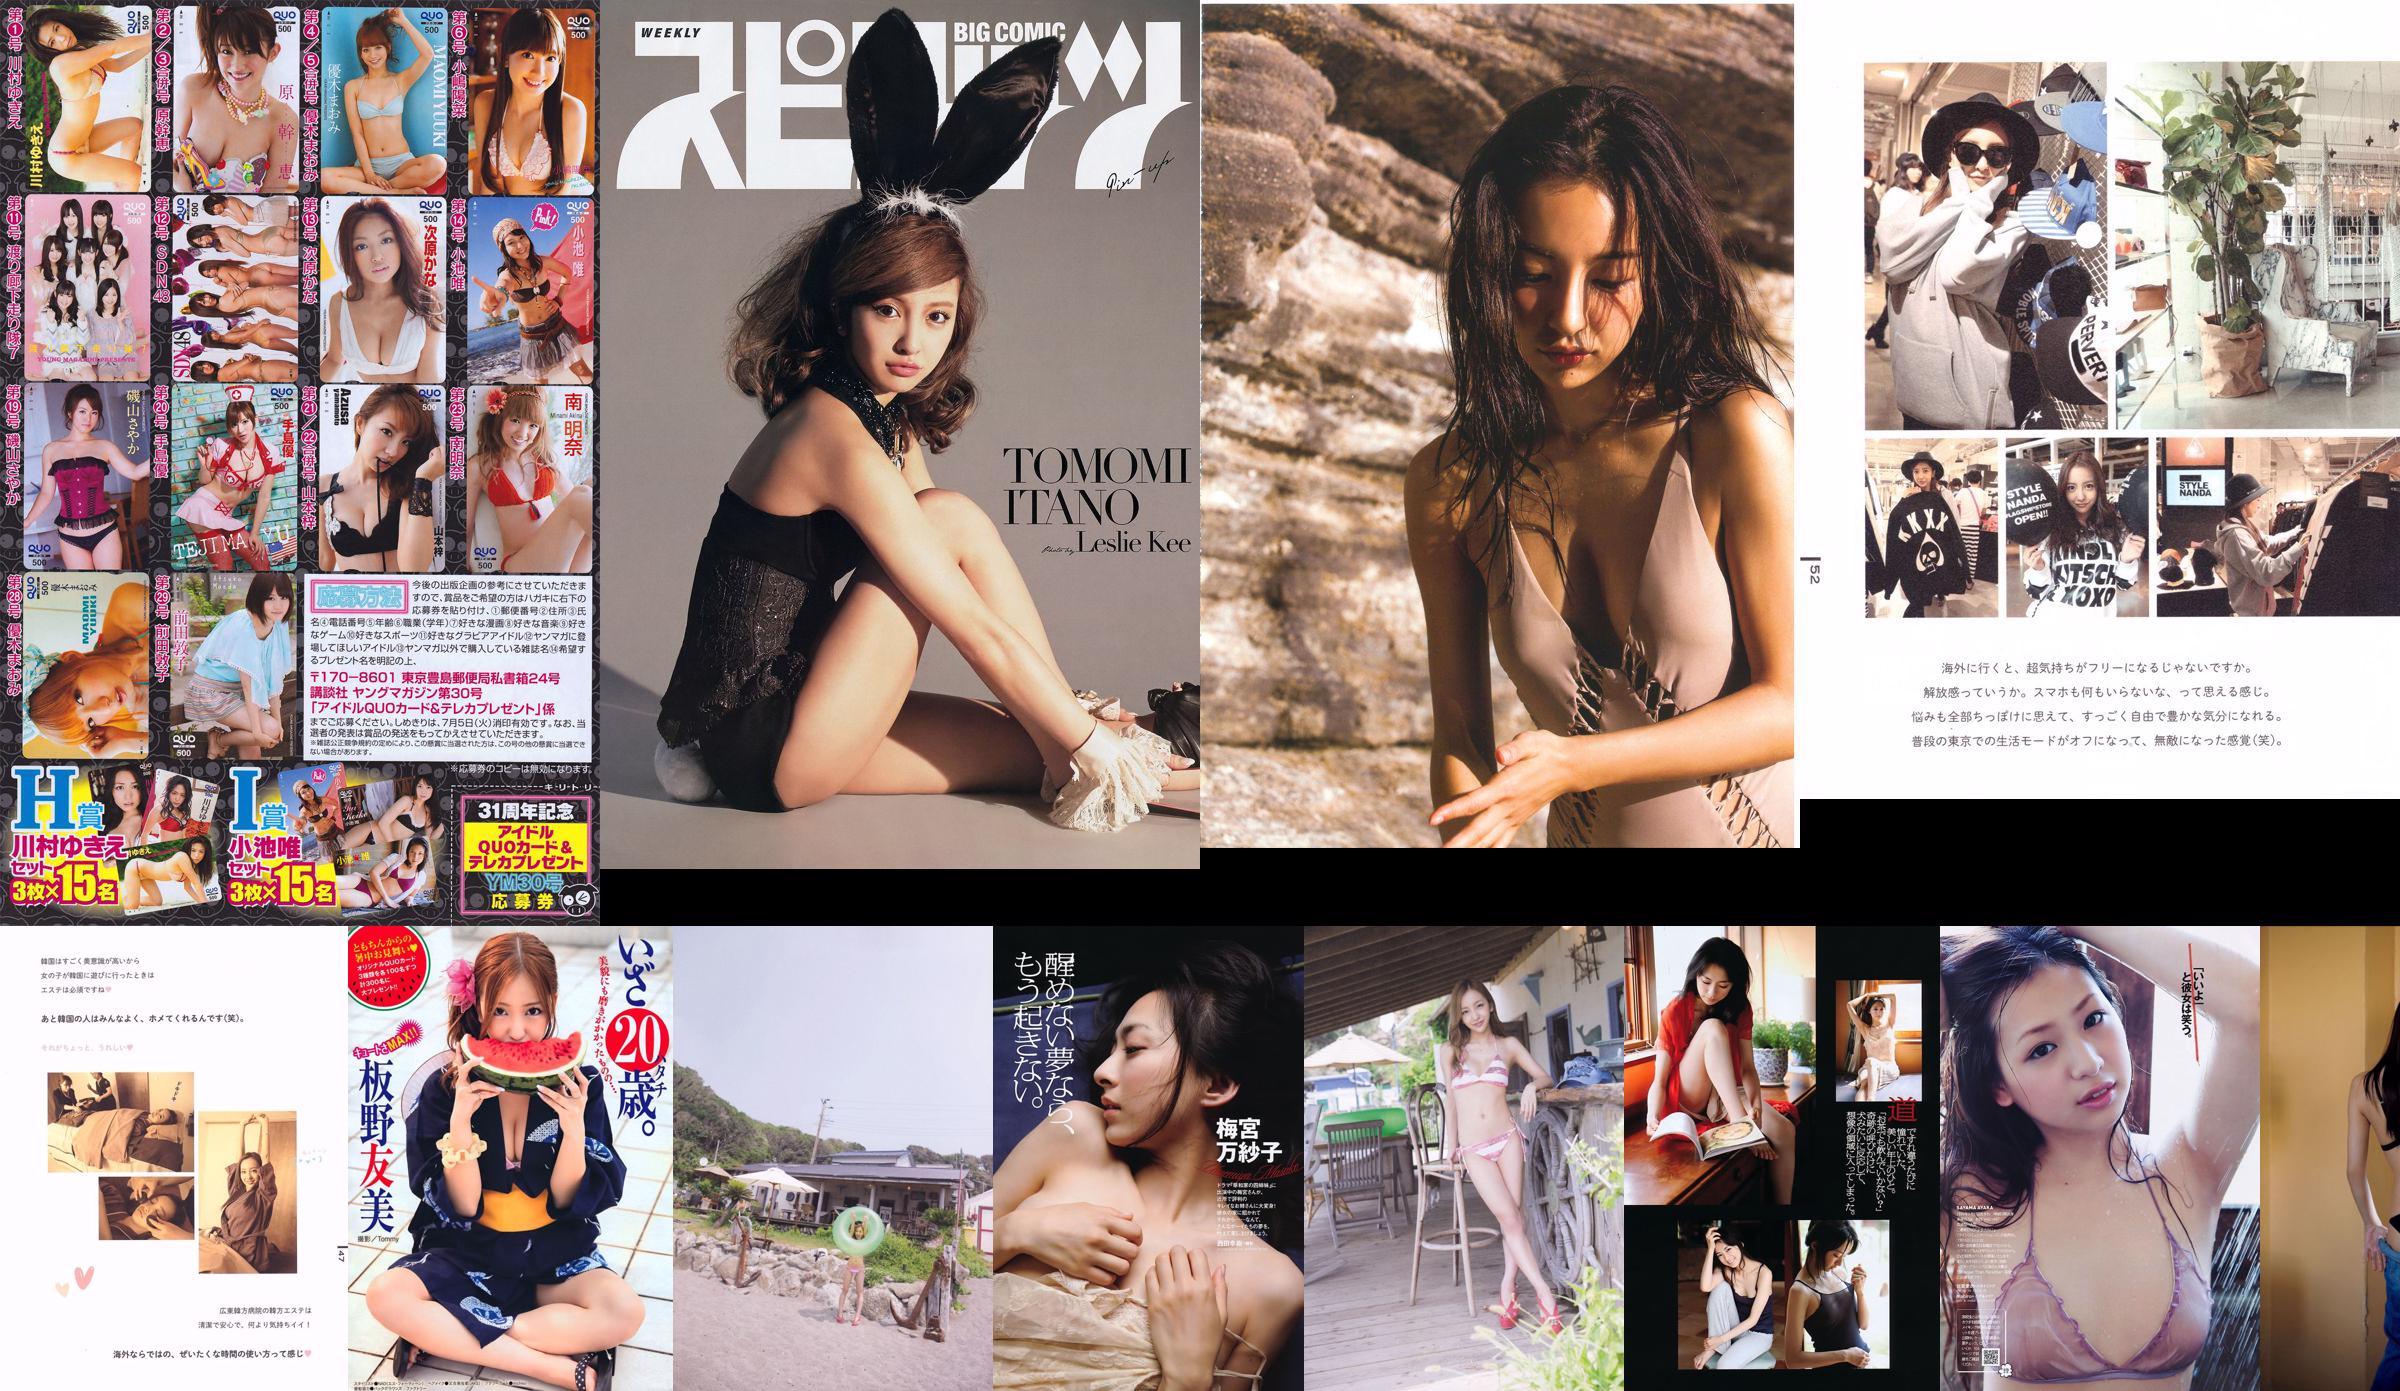 [Grands esprits de la bande dessinée hebdomadaire] Itano Tomomi 2014 No.30 Photo Magazine No.11026e Page 1